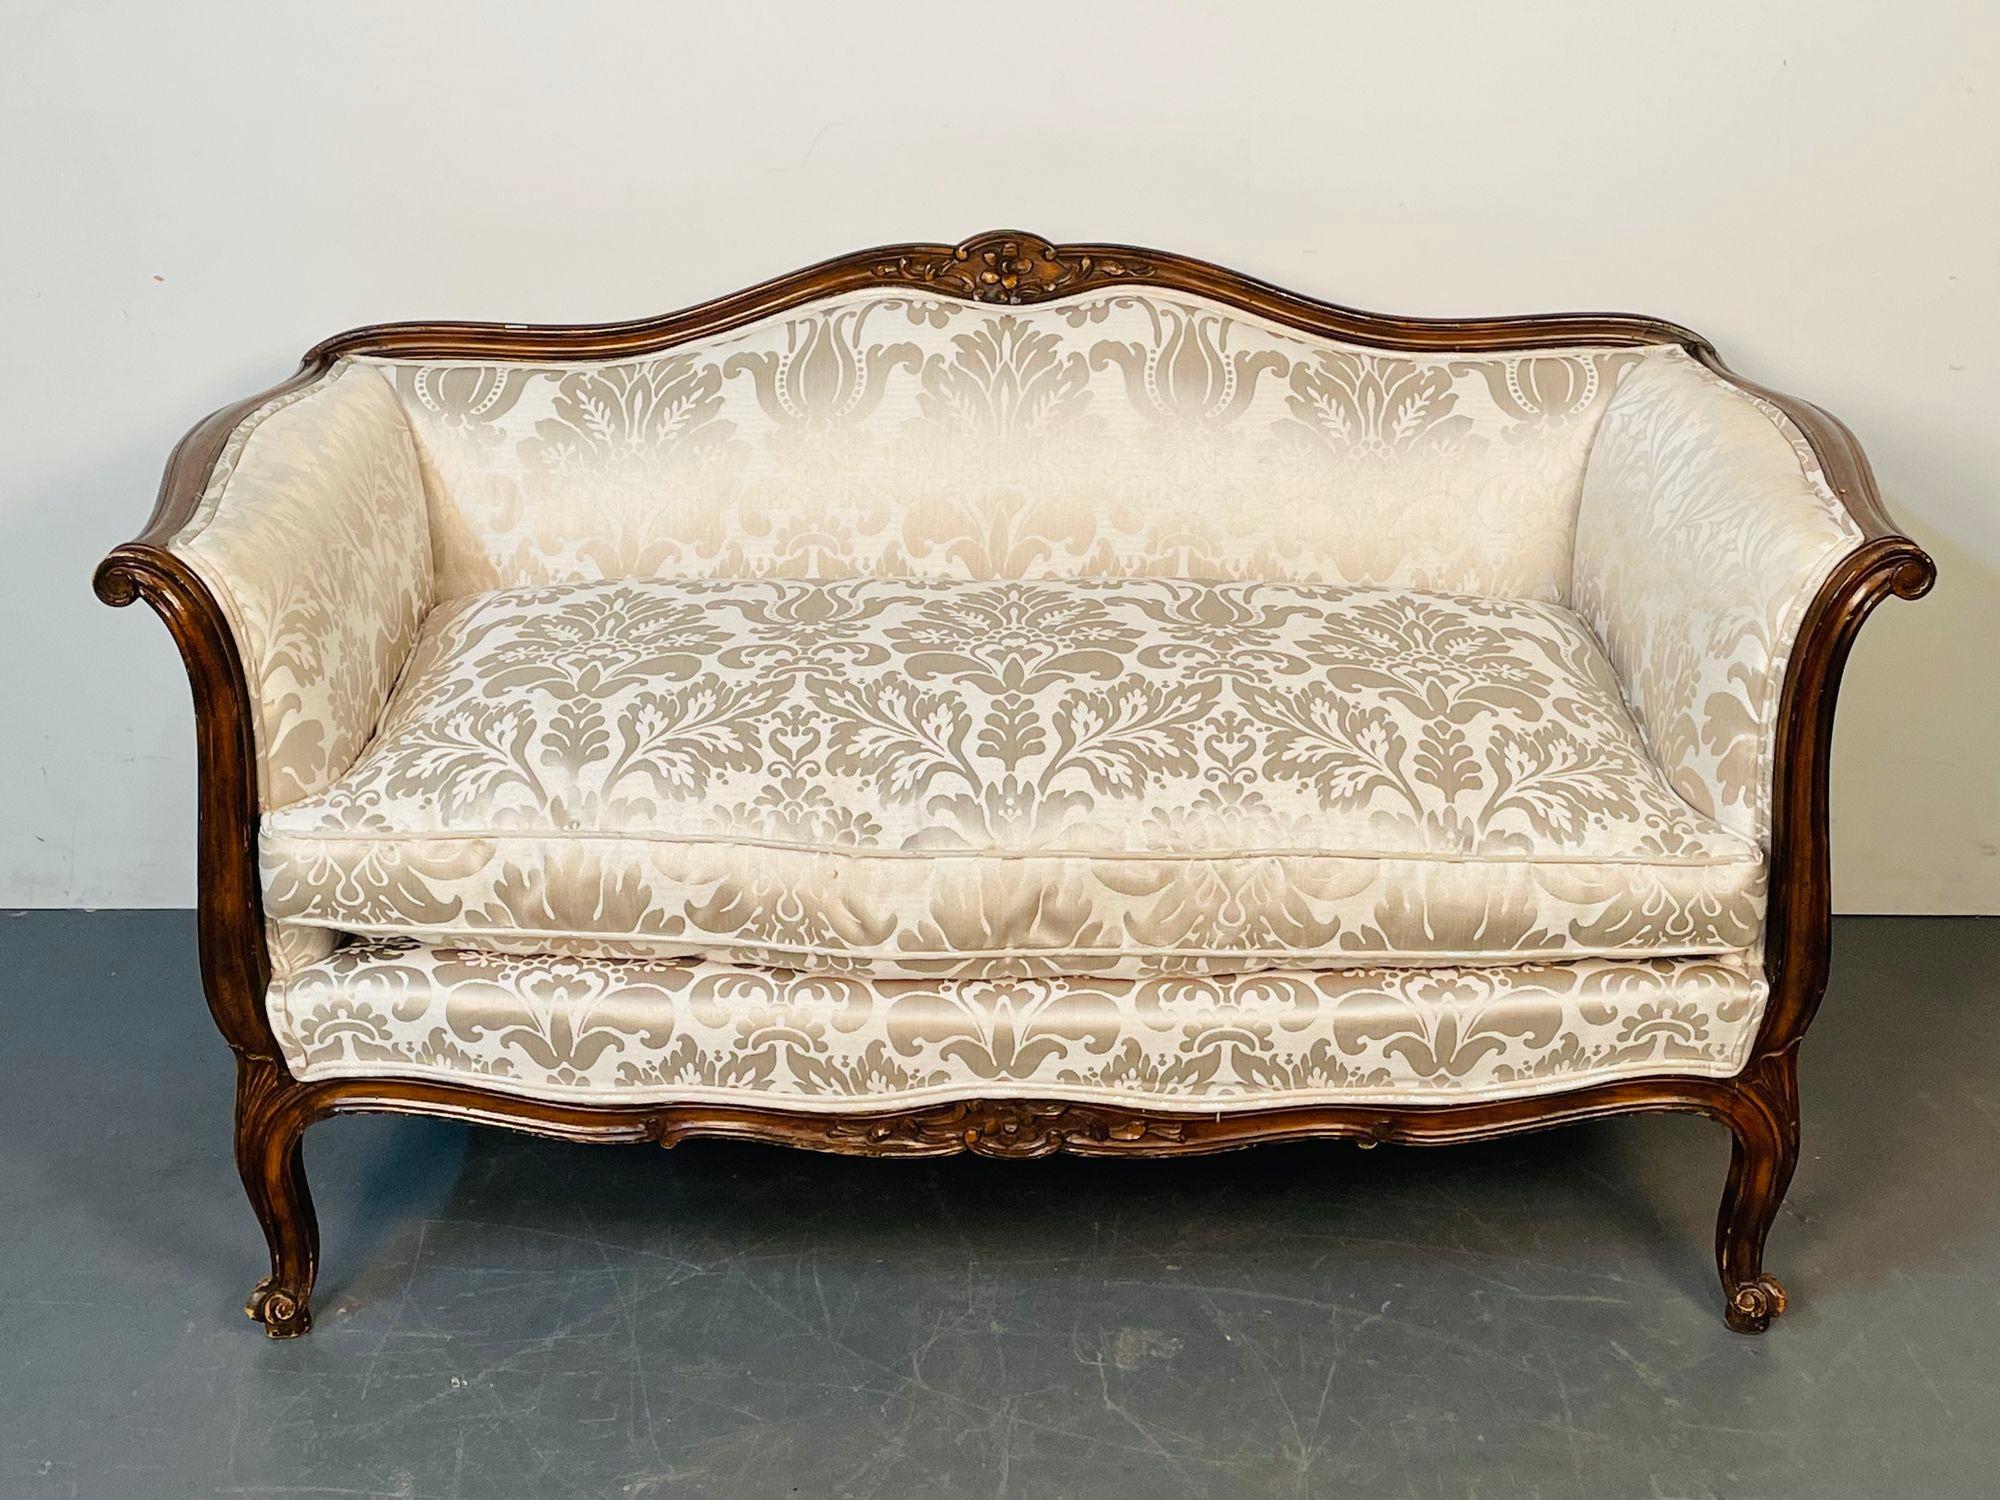 Petit canapé Louis XV en acajou sculpté, tapisserie en soie florale

Un superbe canapé de style Louis XV avec un cadre en bois massif de noyer vers 1940 récemment recouvert d'une tapisserie en soie Lee. Solide et robuste.
H30 L54 D29 SH18.5